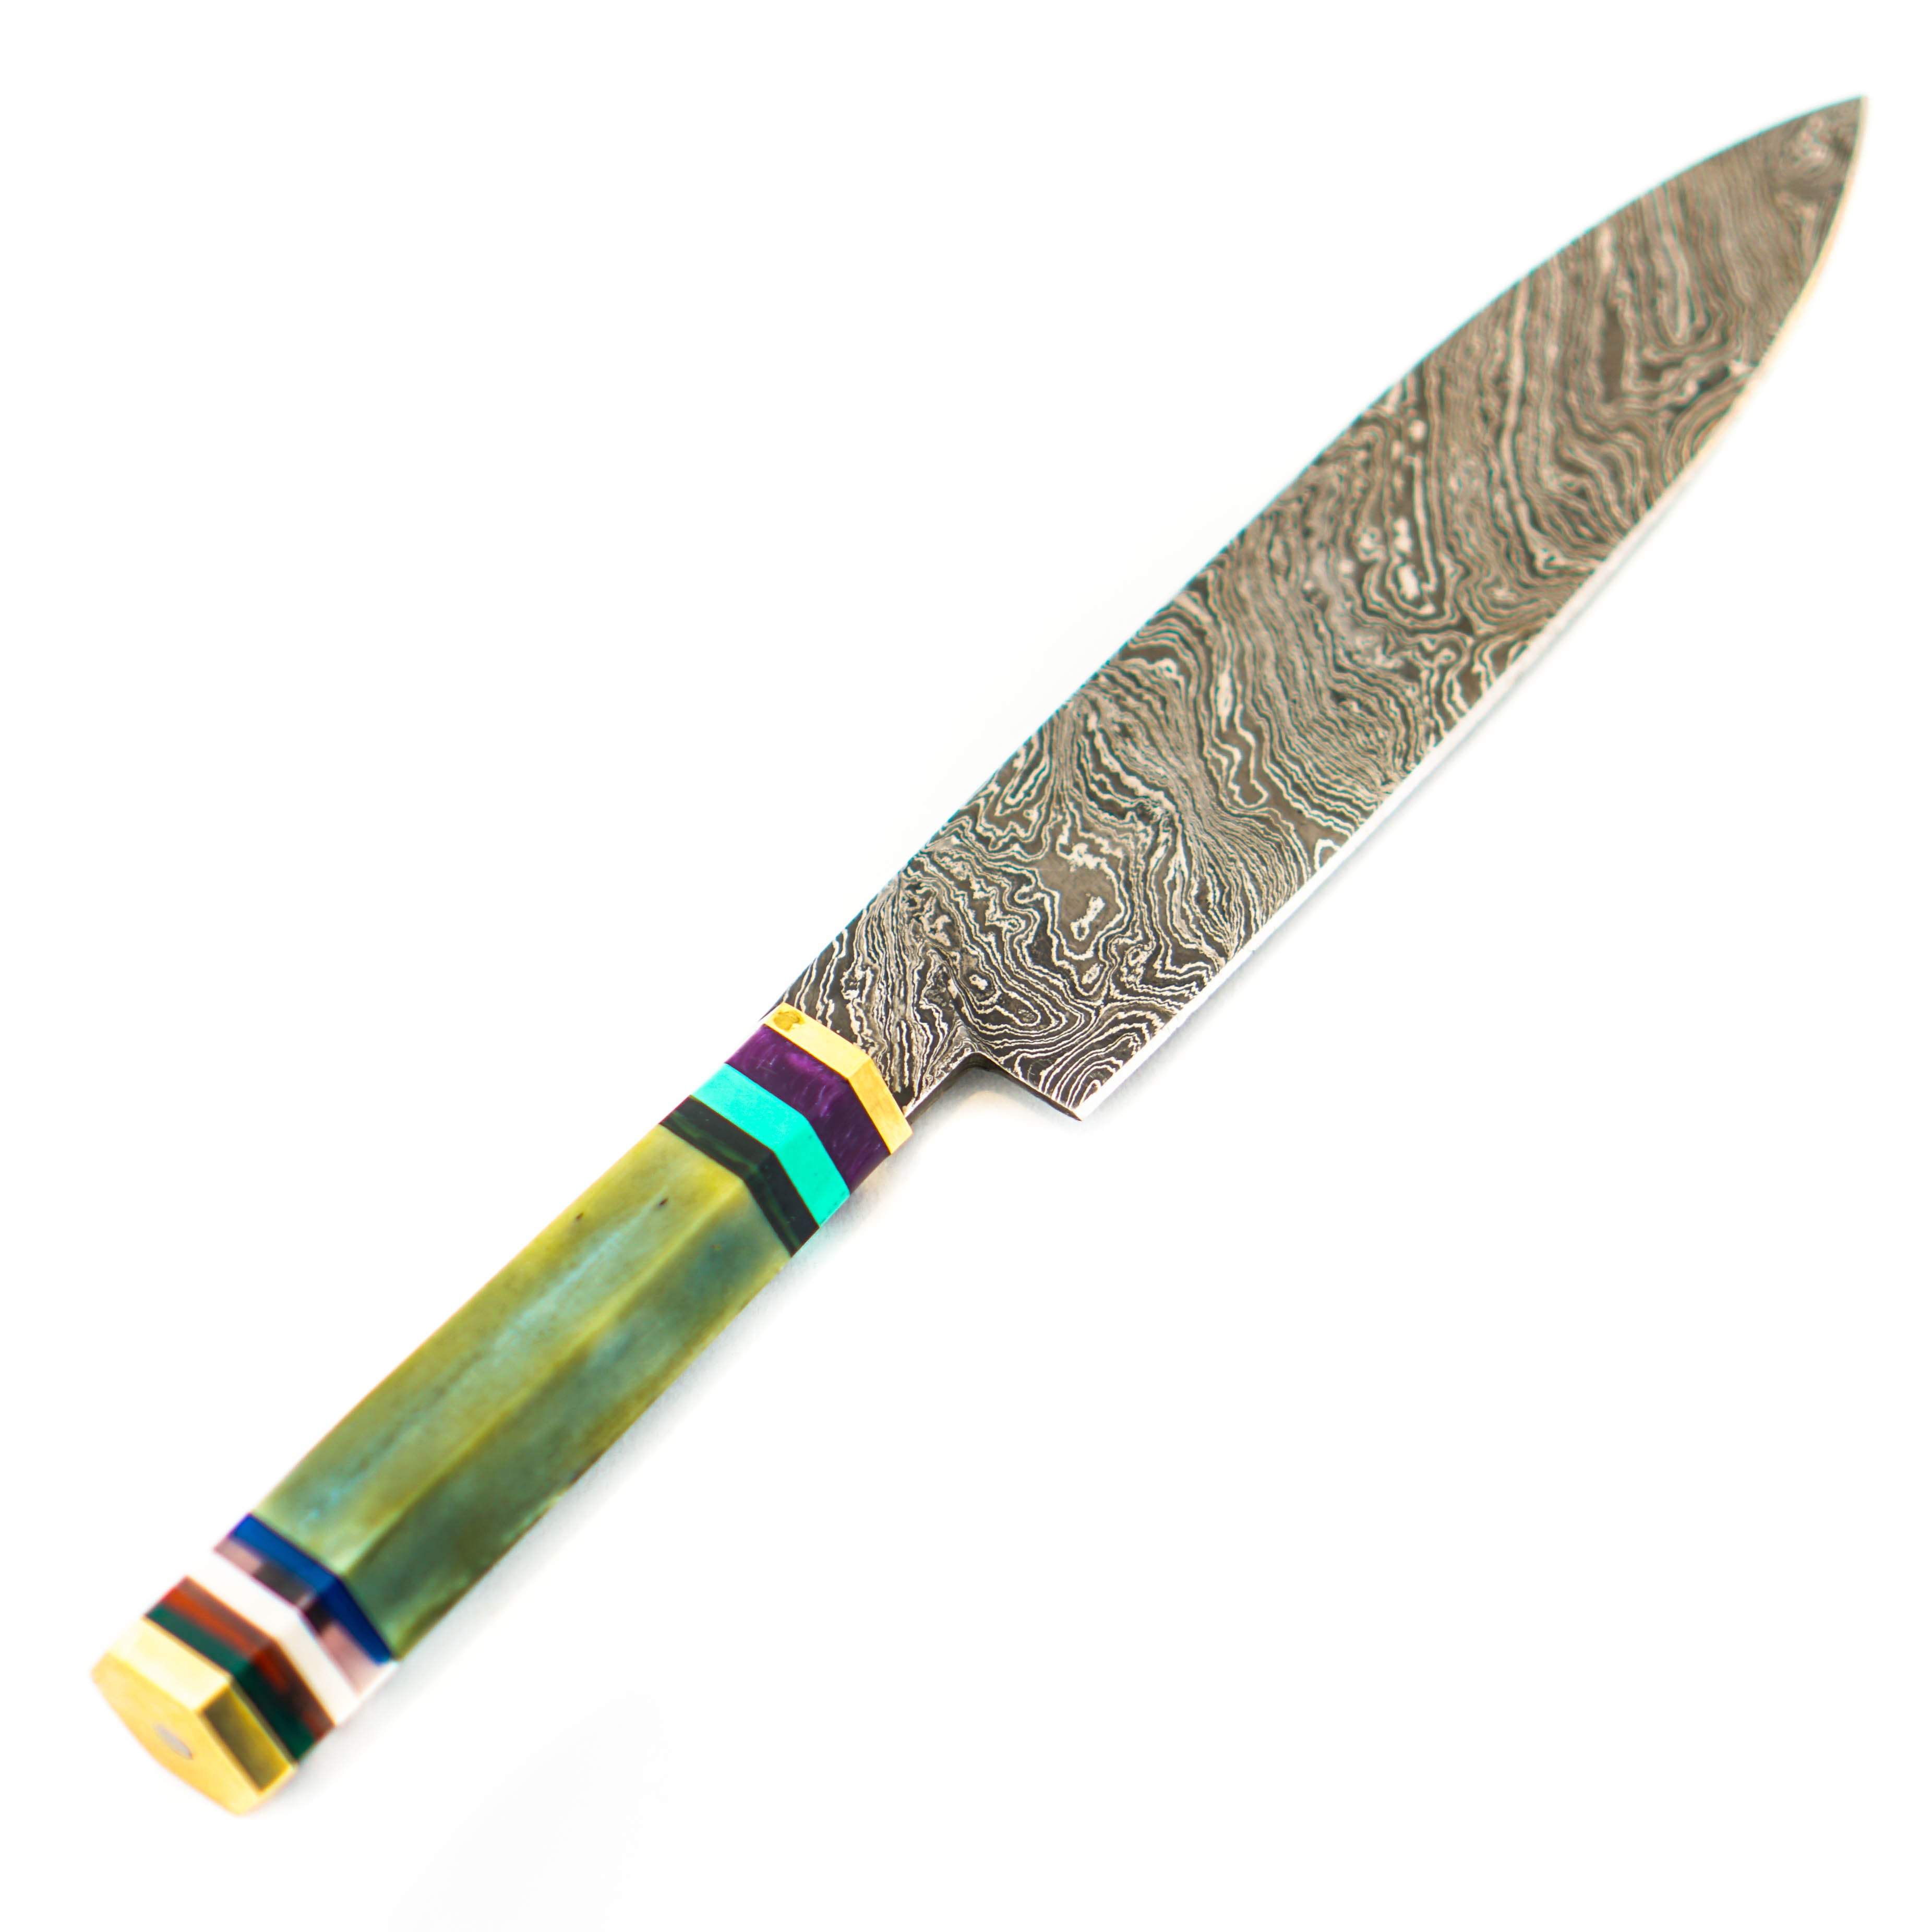 Butcher Knife For Sale- High Carbon Damascus Steel Blade | Battling Blades